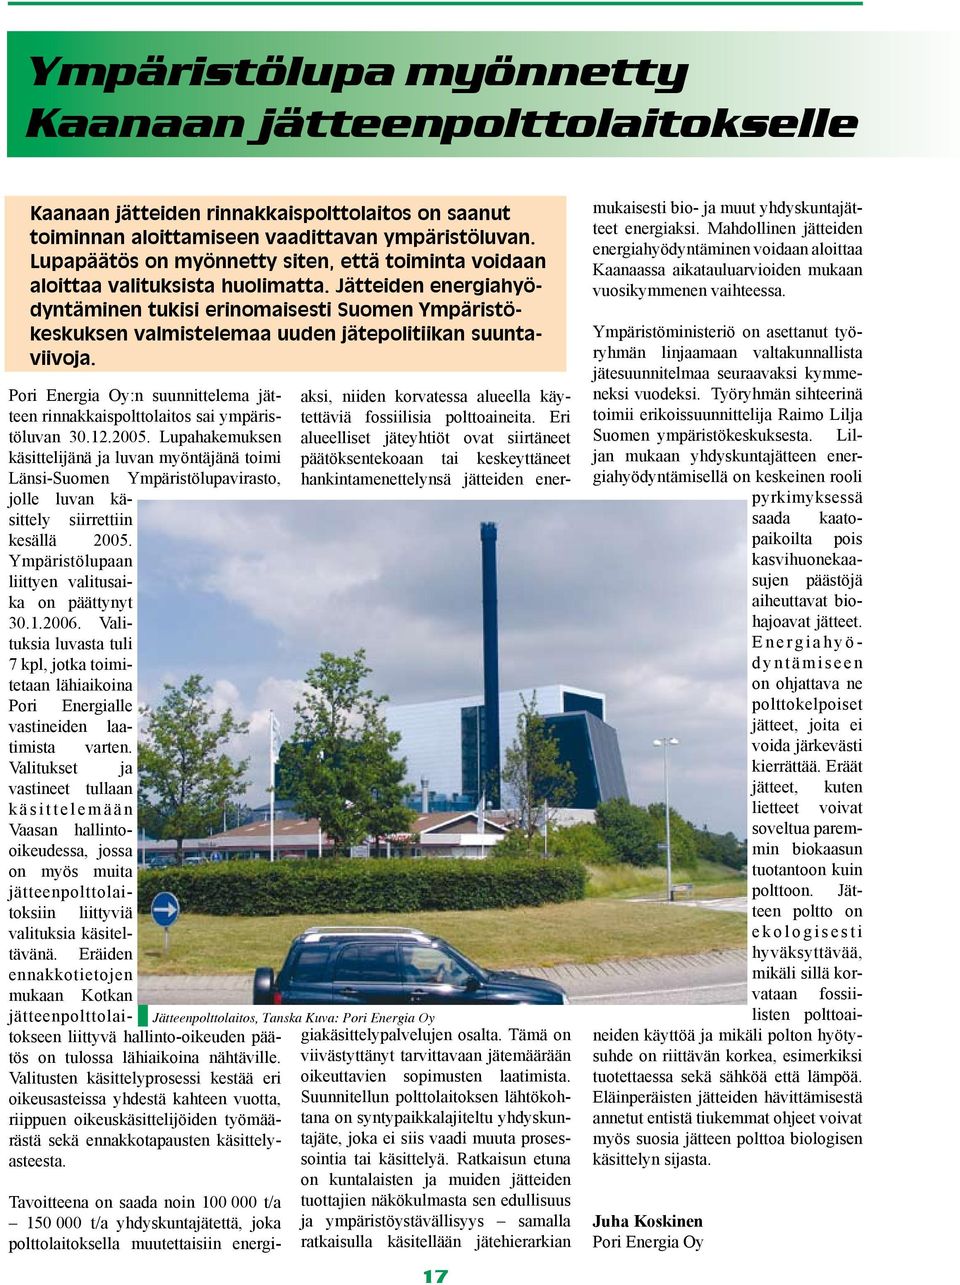 Jätteiden energiahyödyntäminen tukisi erinomaisesti Suomen Ympäristökeskuksen valmistelemaa uuden jätepolitiikan suuntaviivoja.